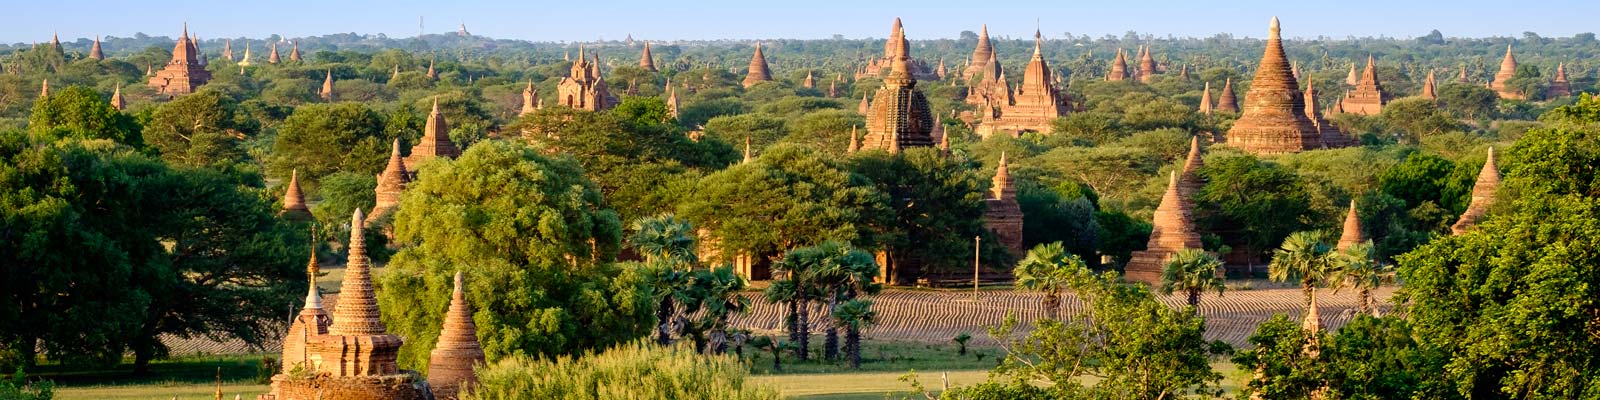 Myanmar Vegan Travel Guide